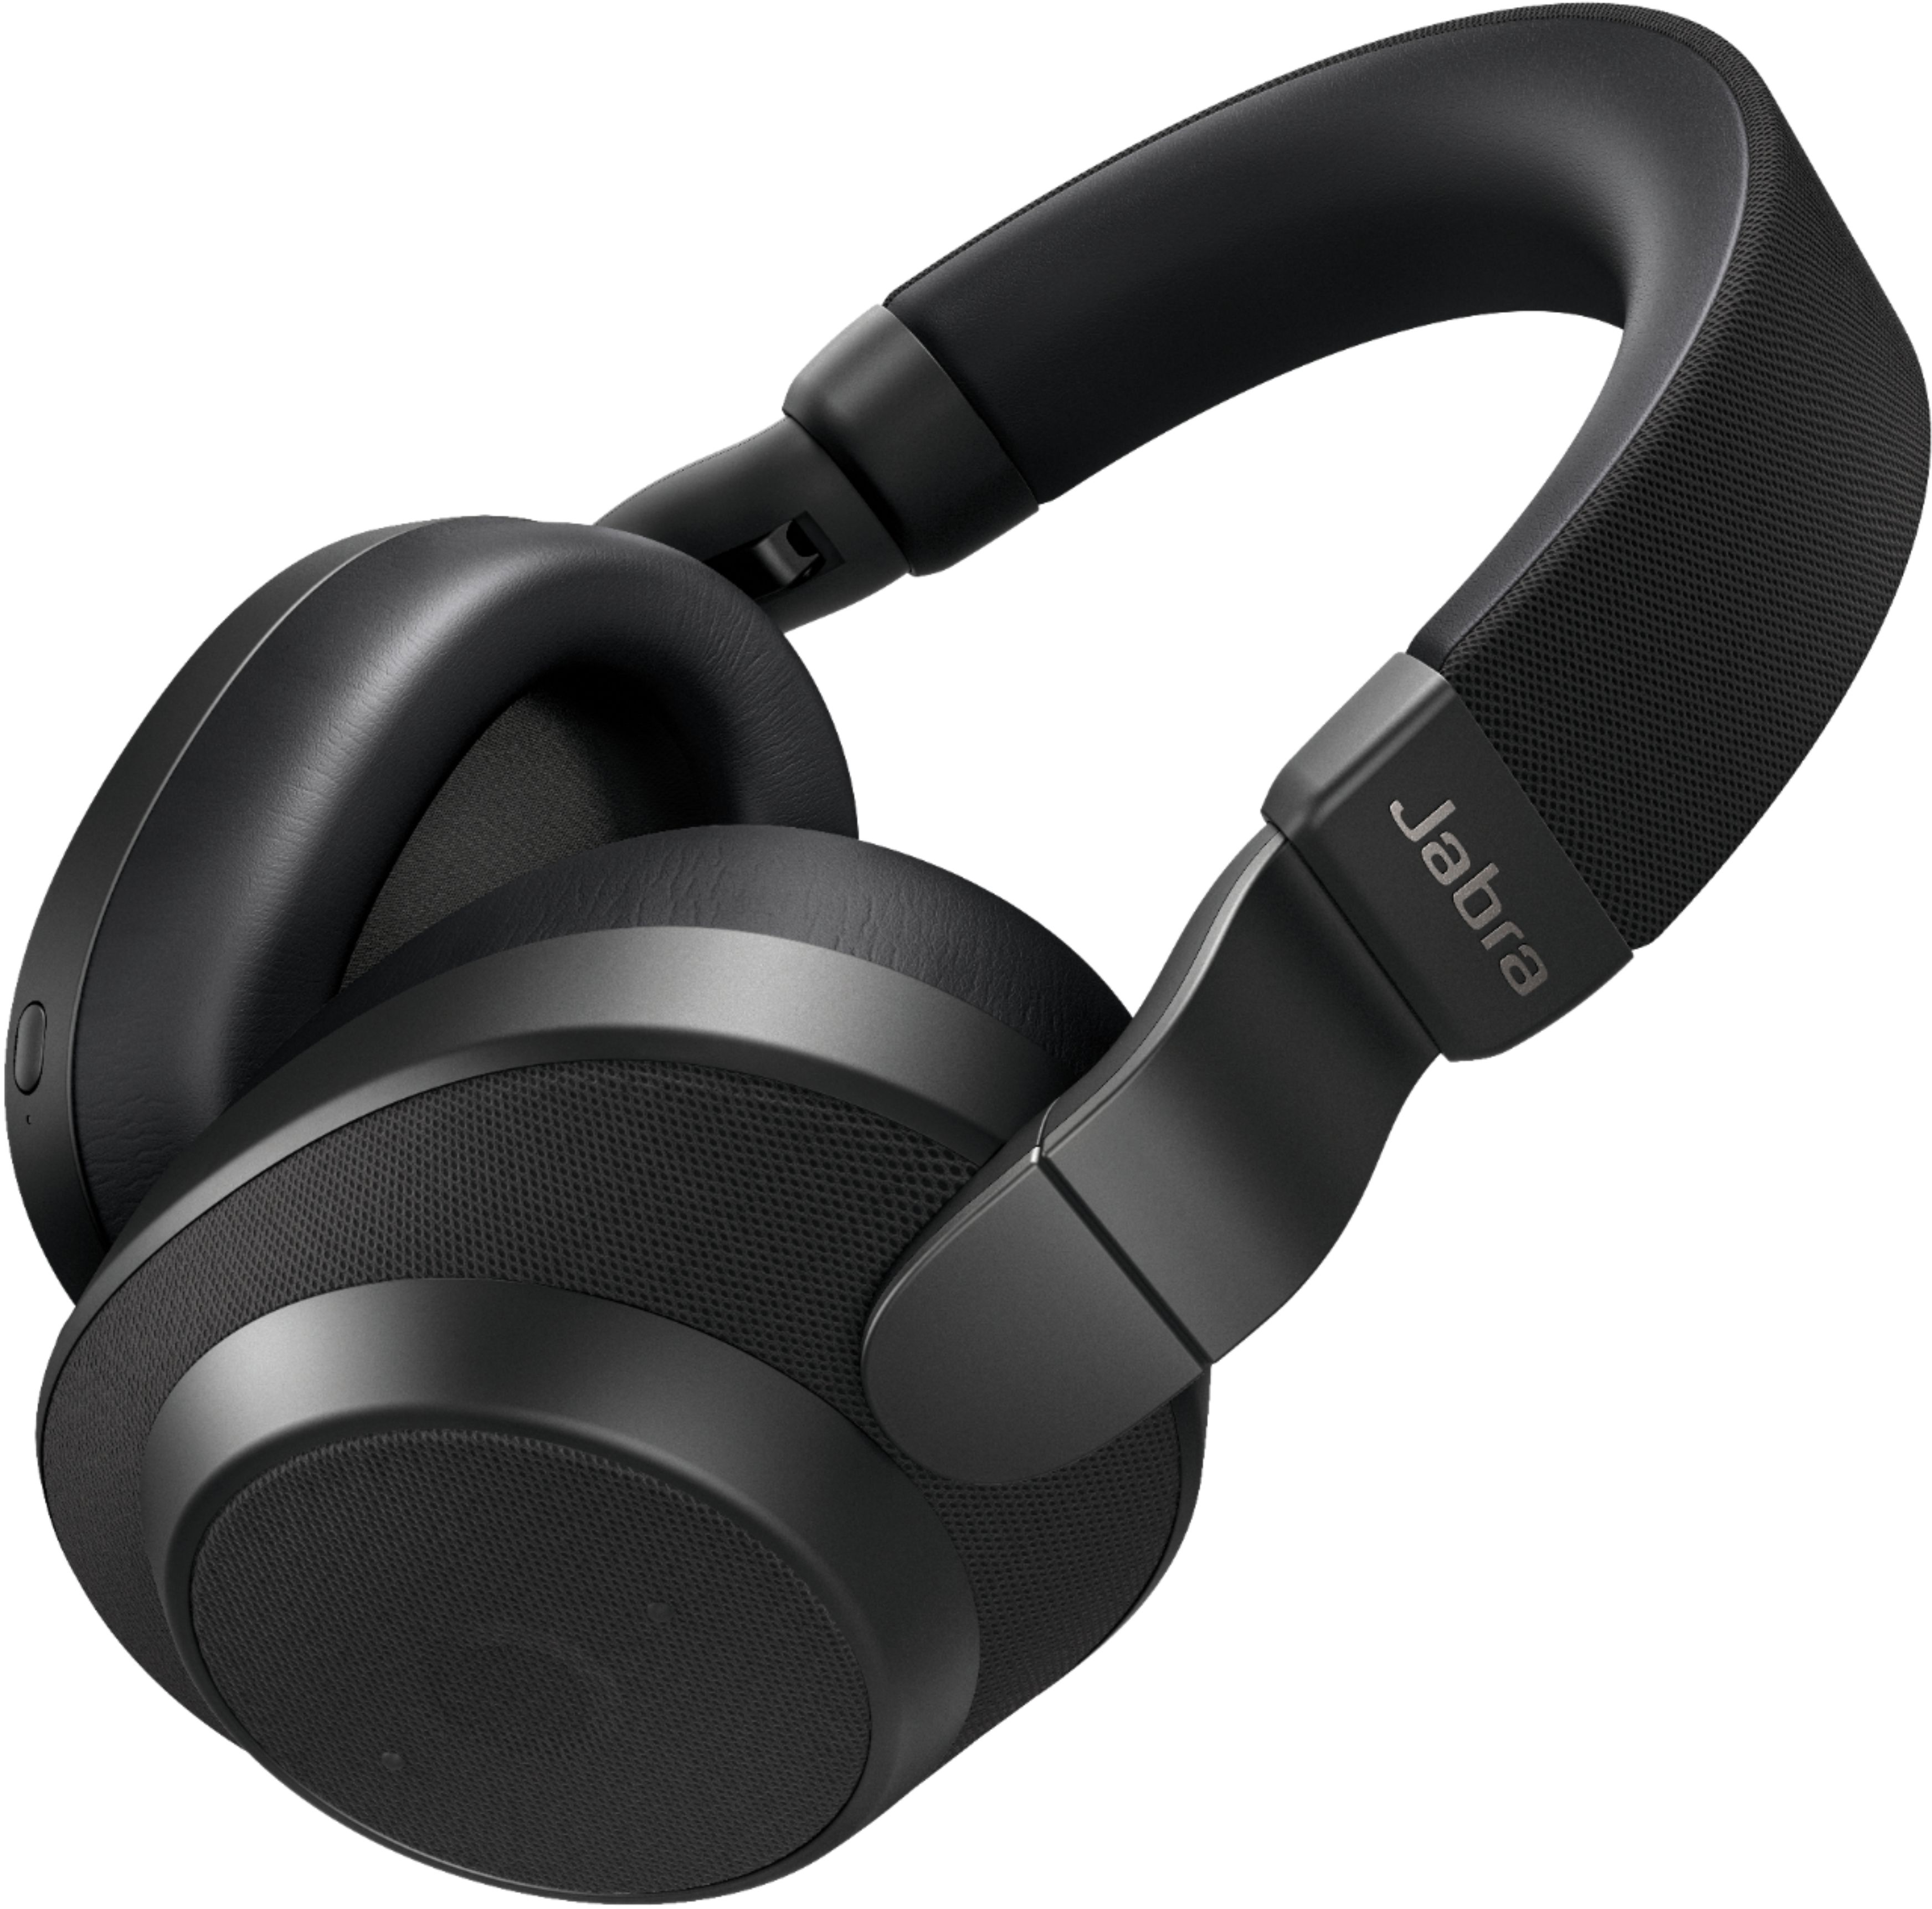 オーディオ機器 ヘッドフォン Best Buy: Jabra Elite 85h Wireless Noise Cancelling Over-the-Ear 